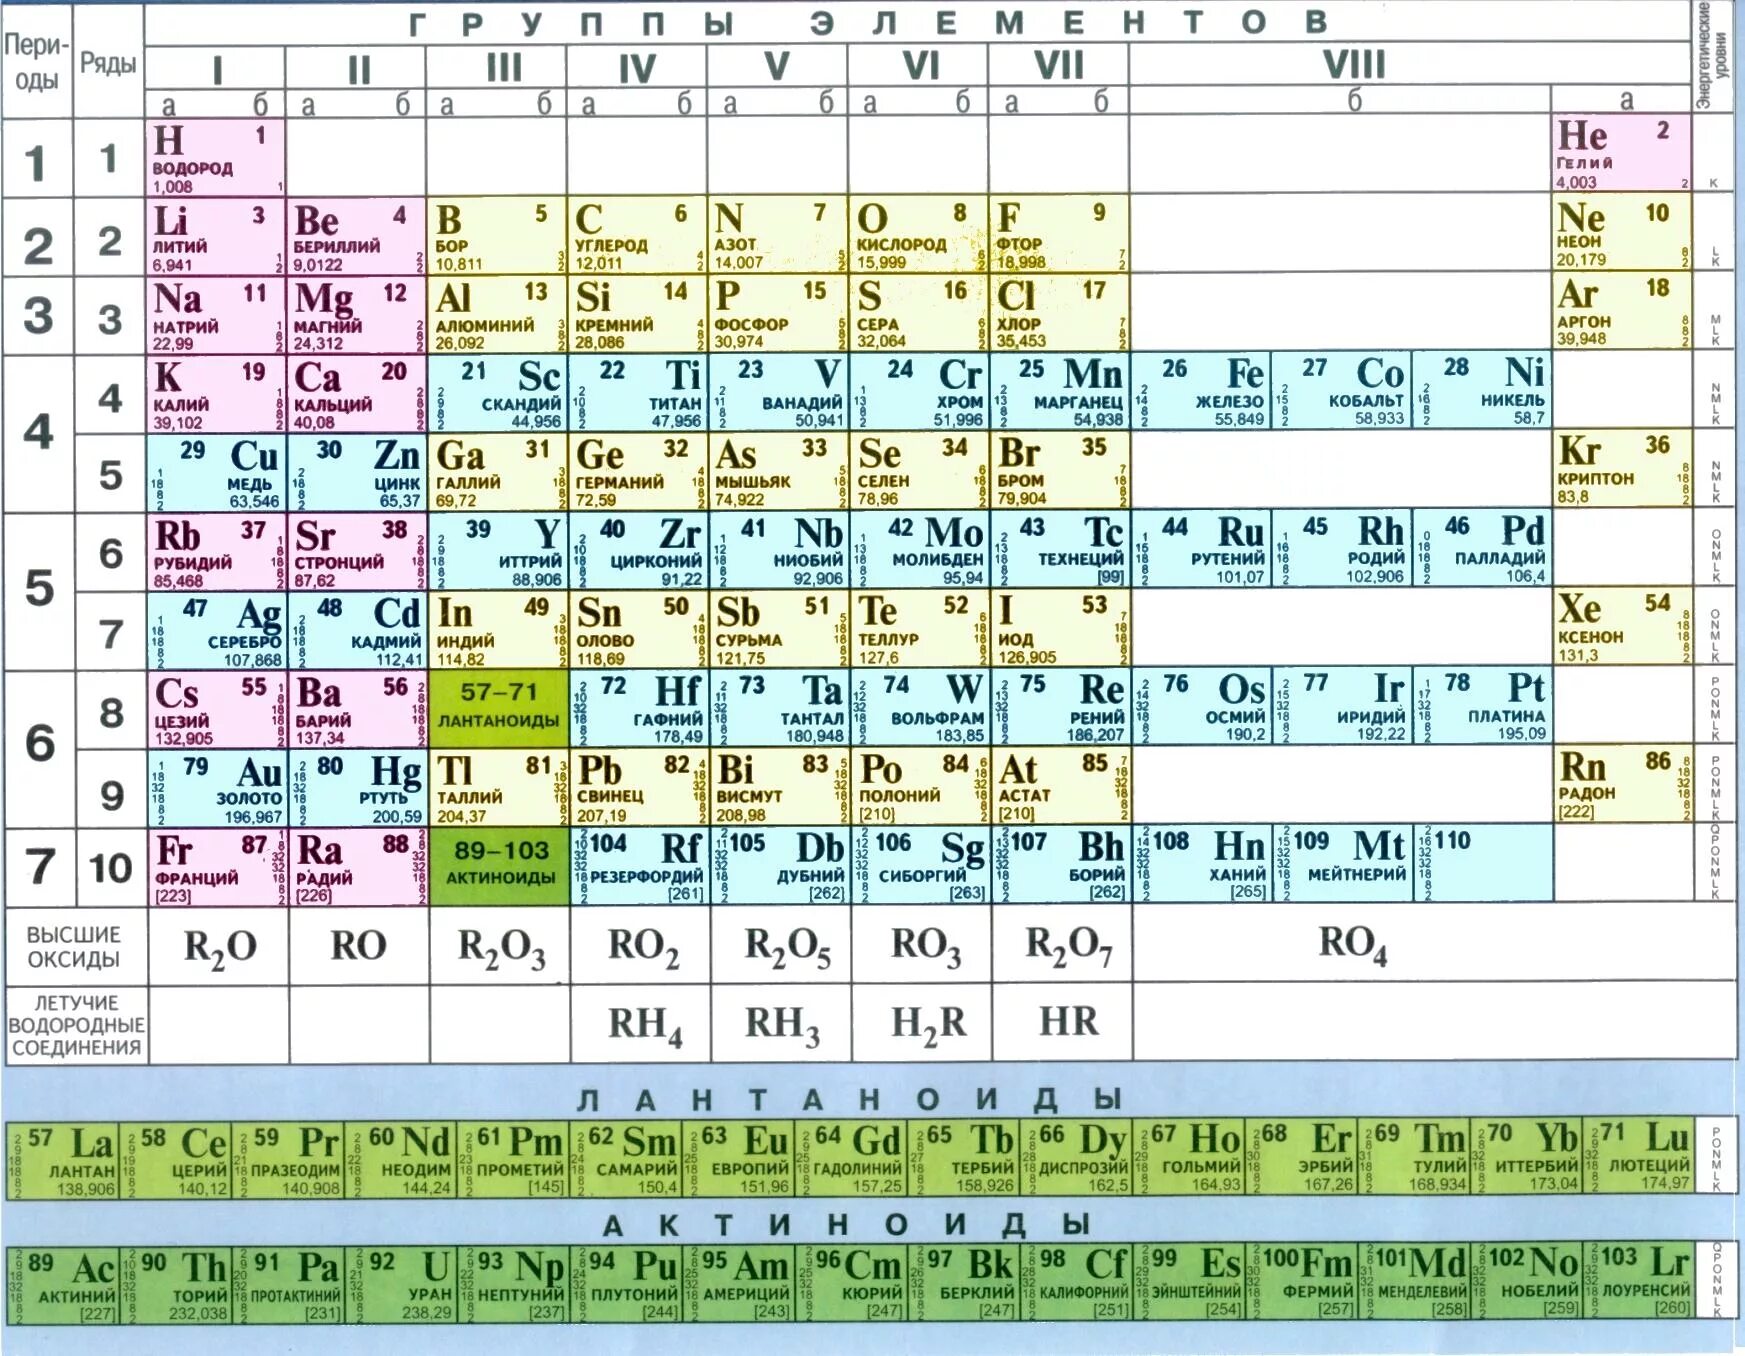 Кальций кремний кислород и сера фтор. Короткопериодная таблица Менделеева. Химия 8 кл таблица Менделеева. Металлы в таблице Менделеева по химии 8 класс.